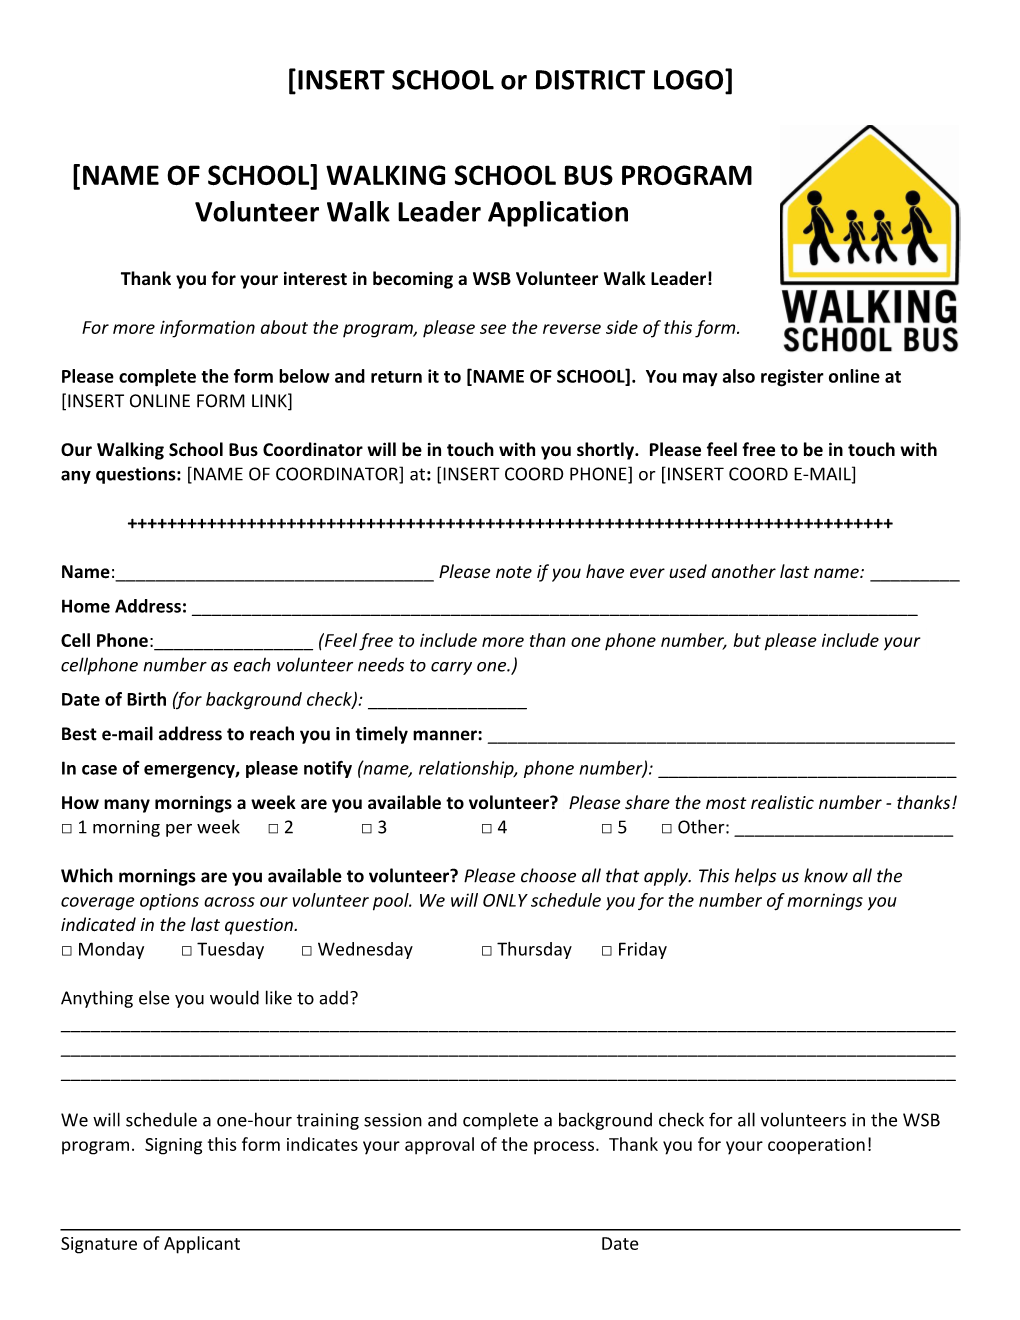 Walking School Bus Program